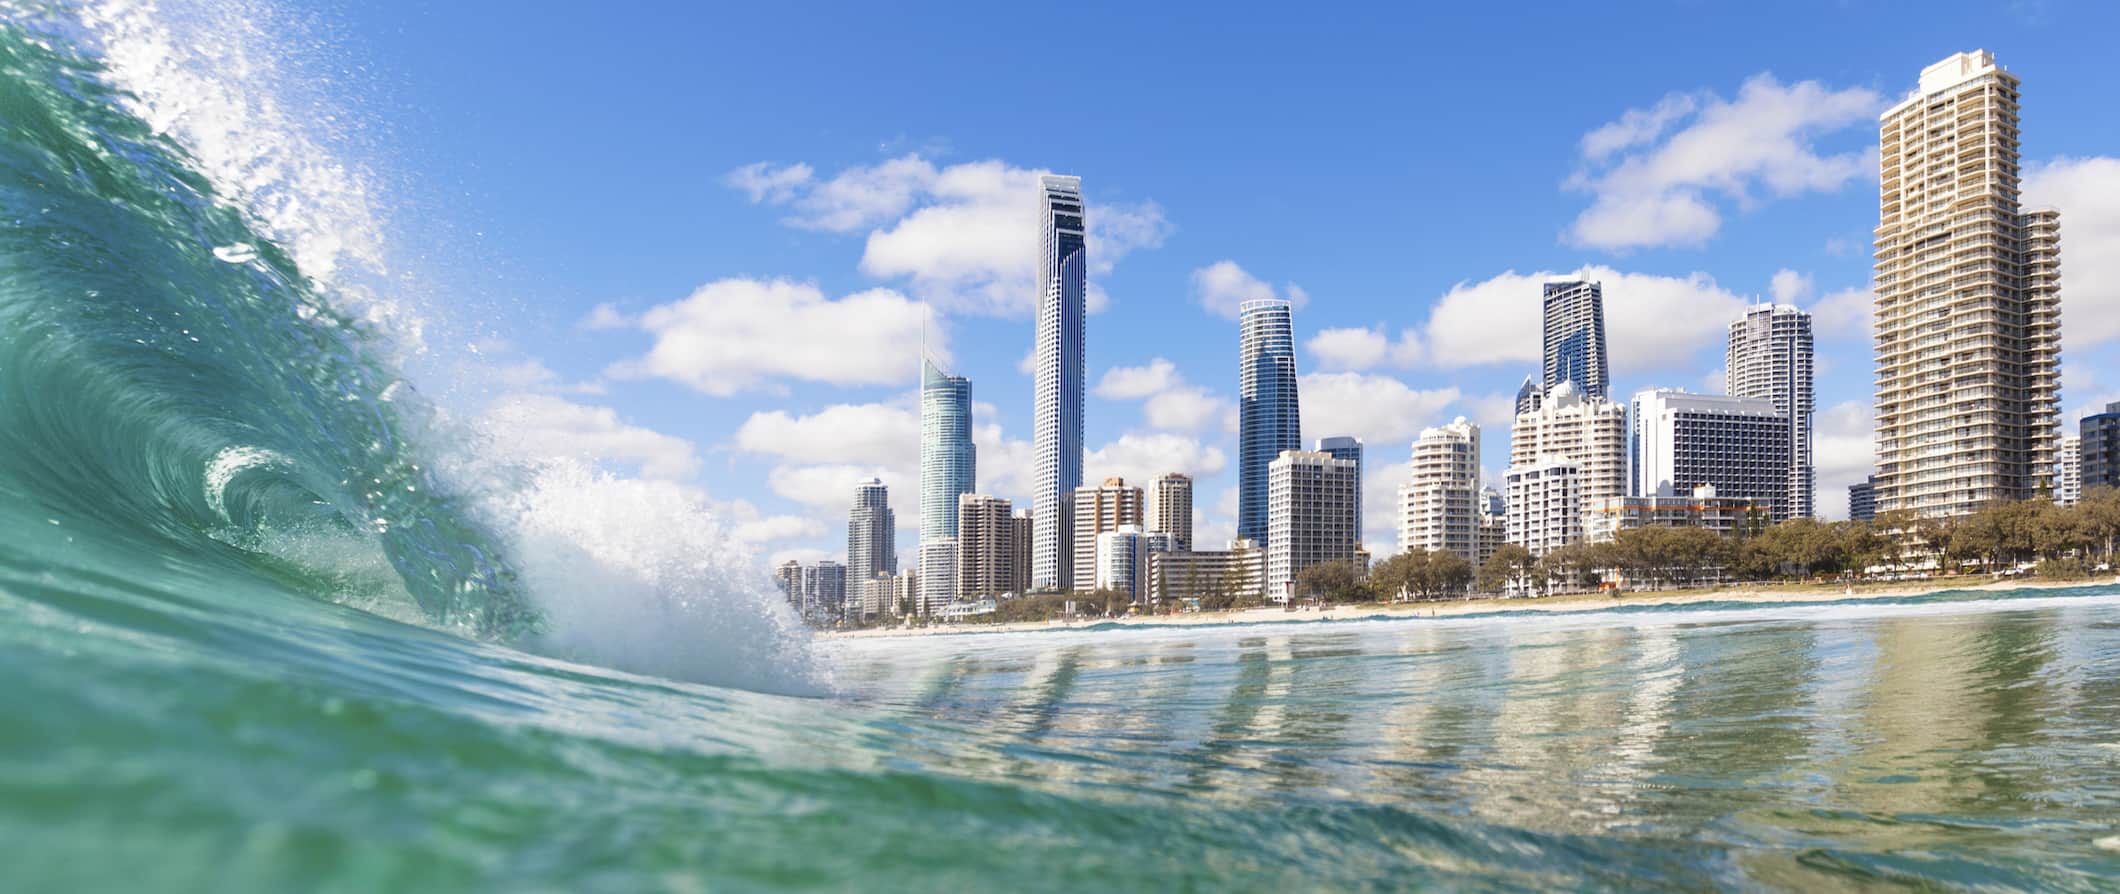 Águas claras de uma onda enorme enquanto alguém surfa na deslumbrante Gold Coast, Austrália